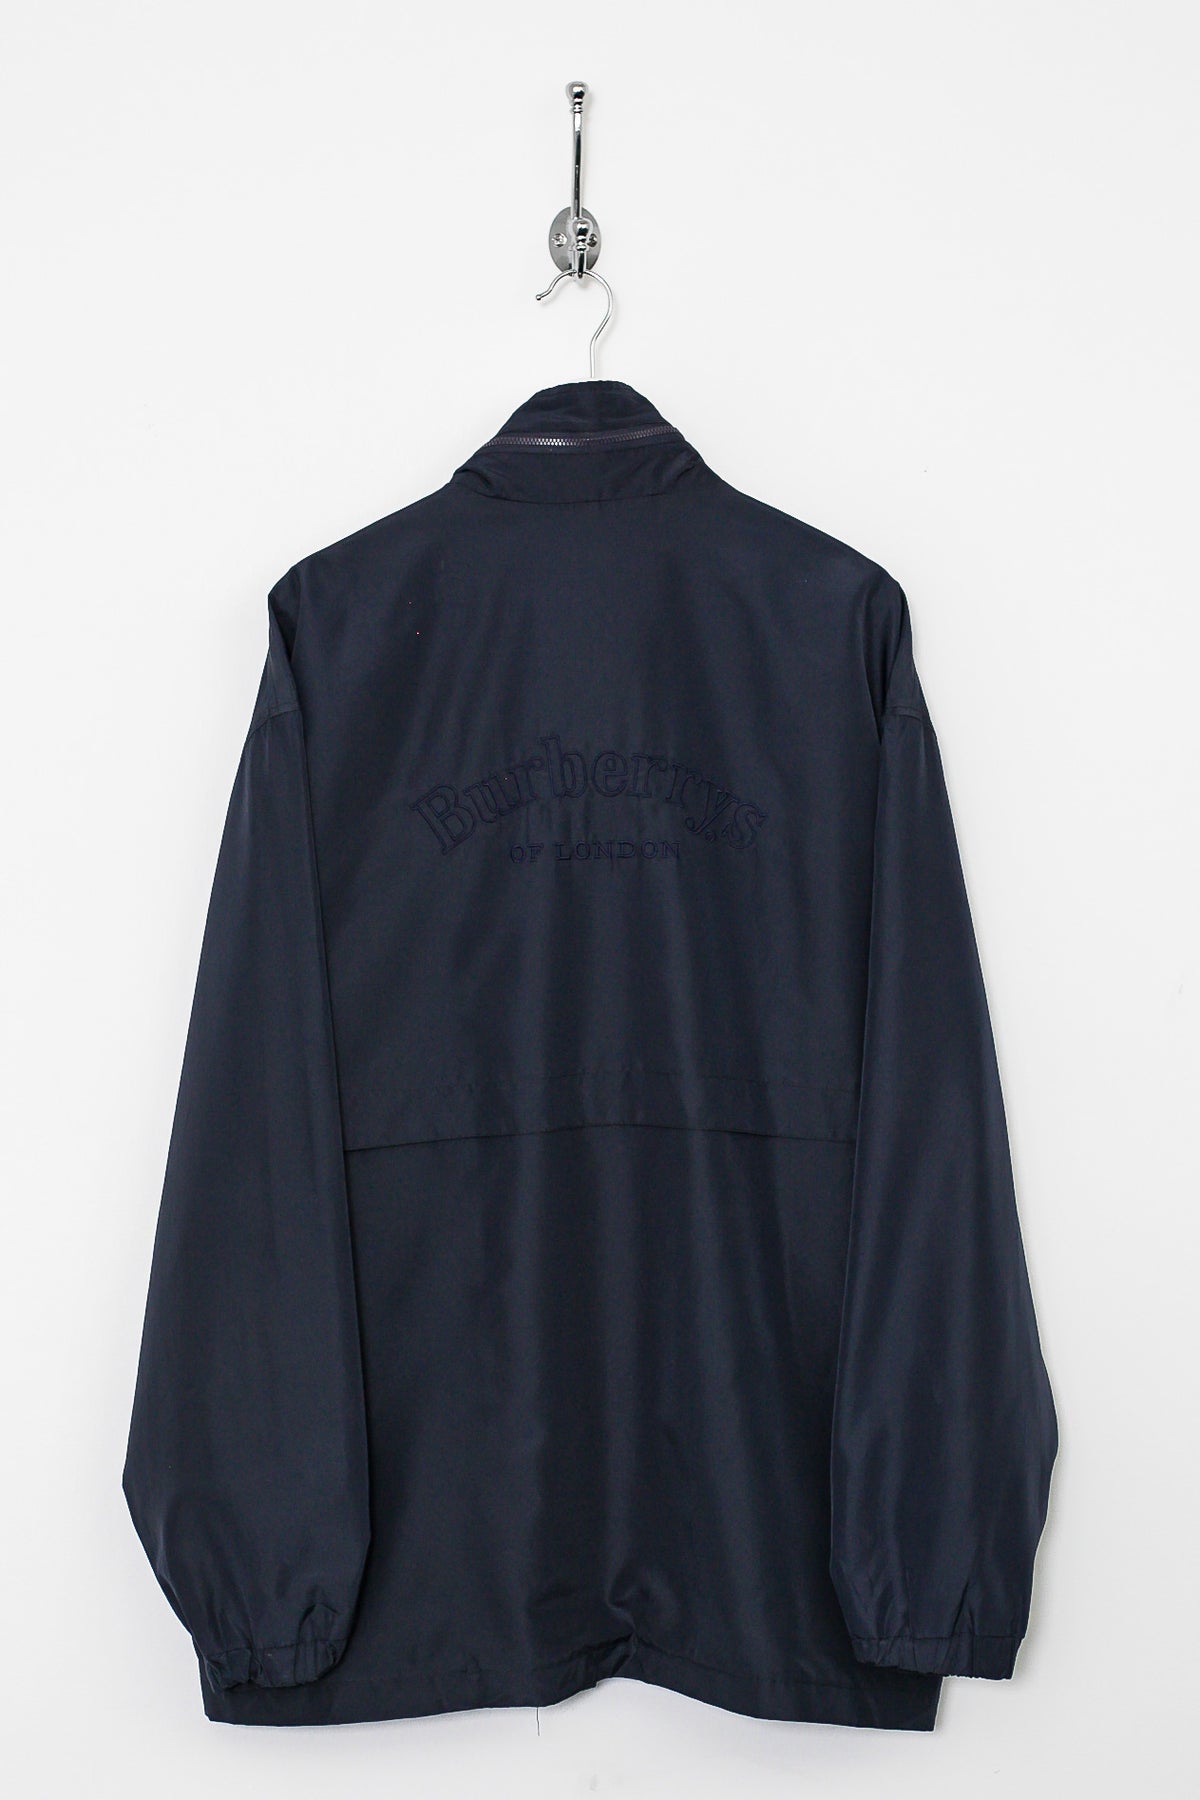 90s Burberry Jacket (XL)